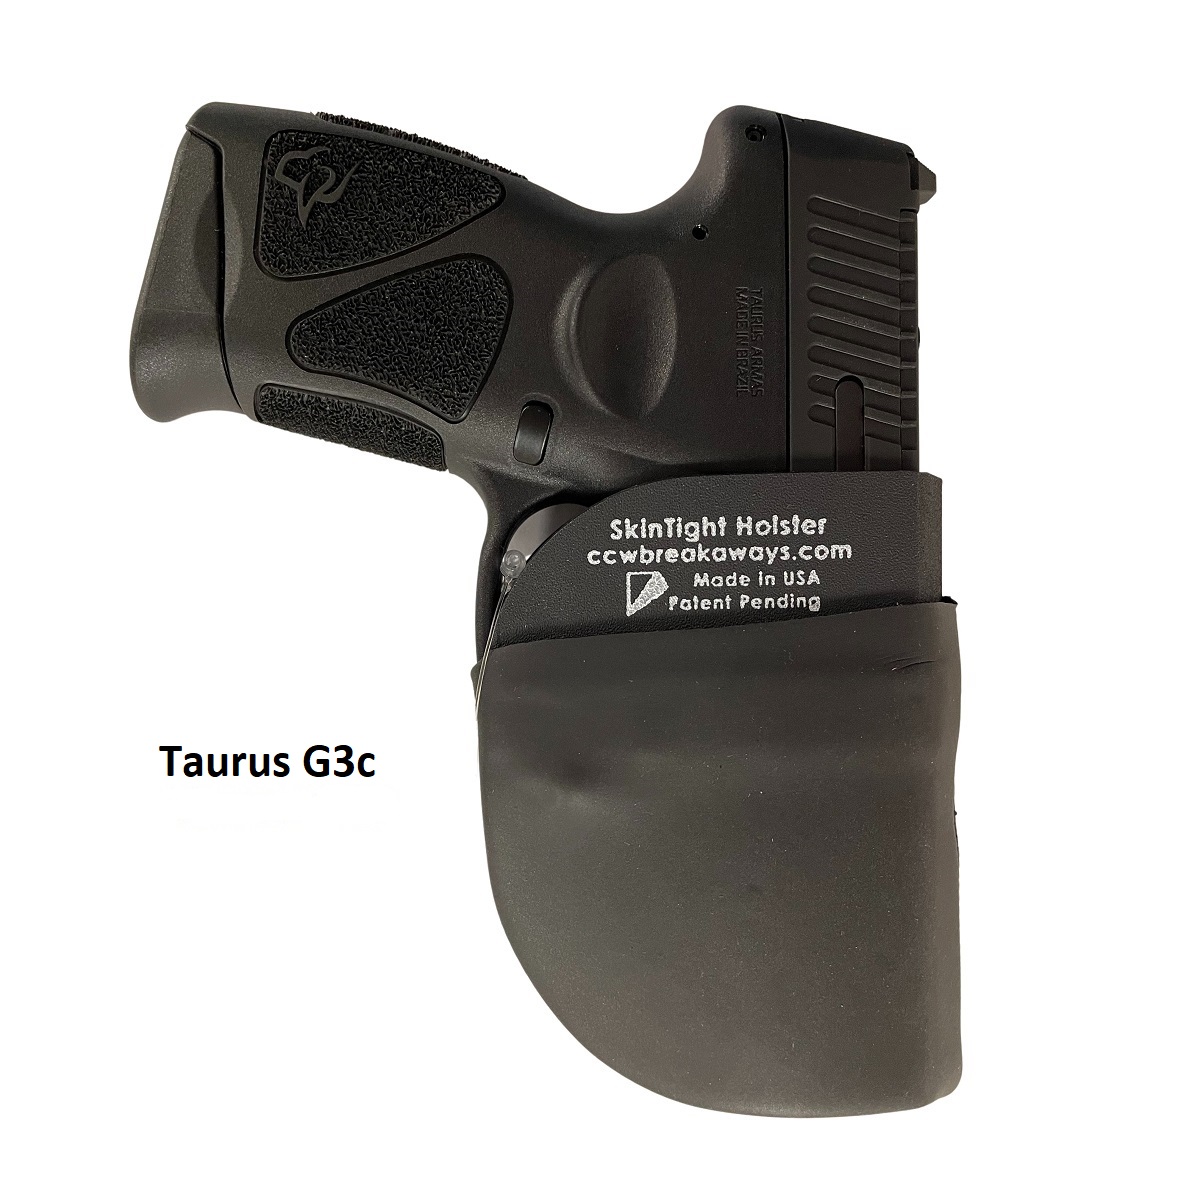 Taurus G3c in SkinTight Holster